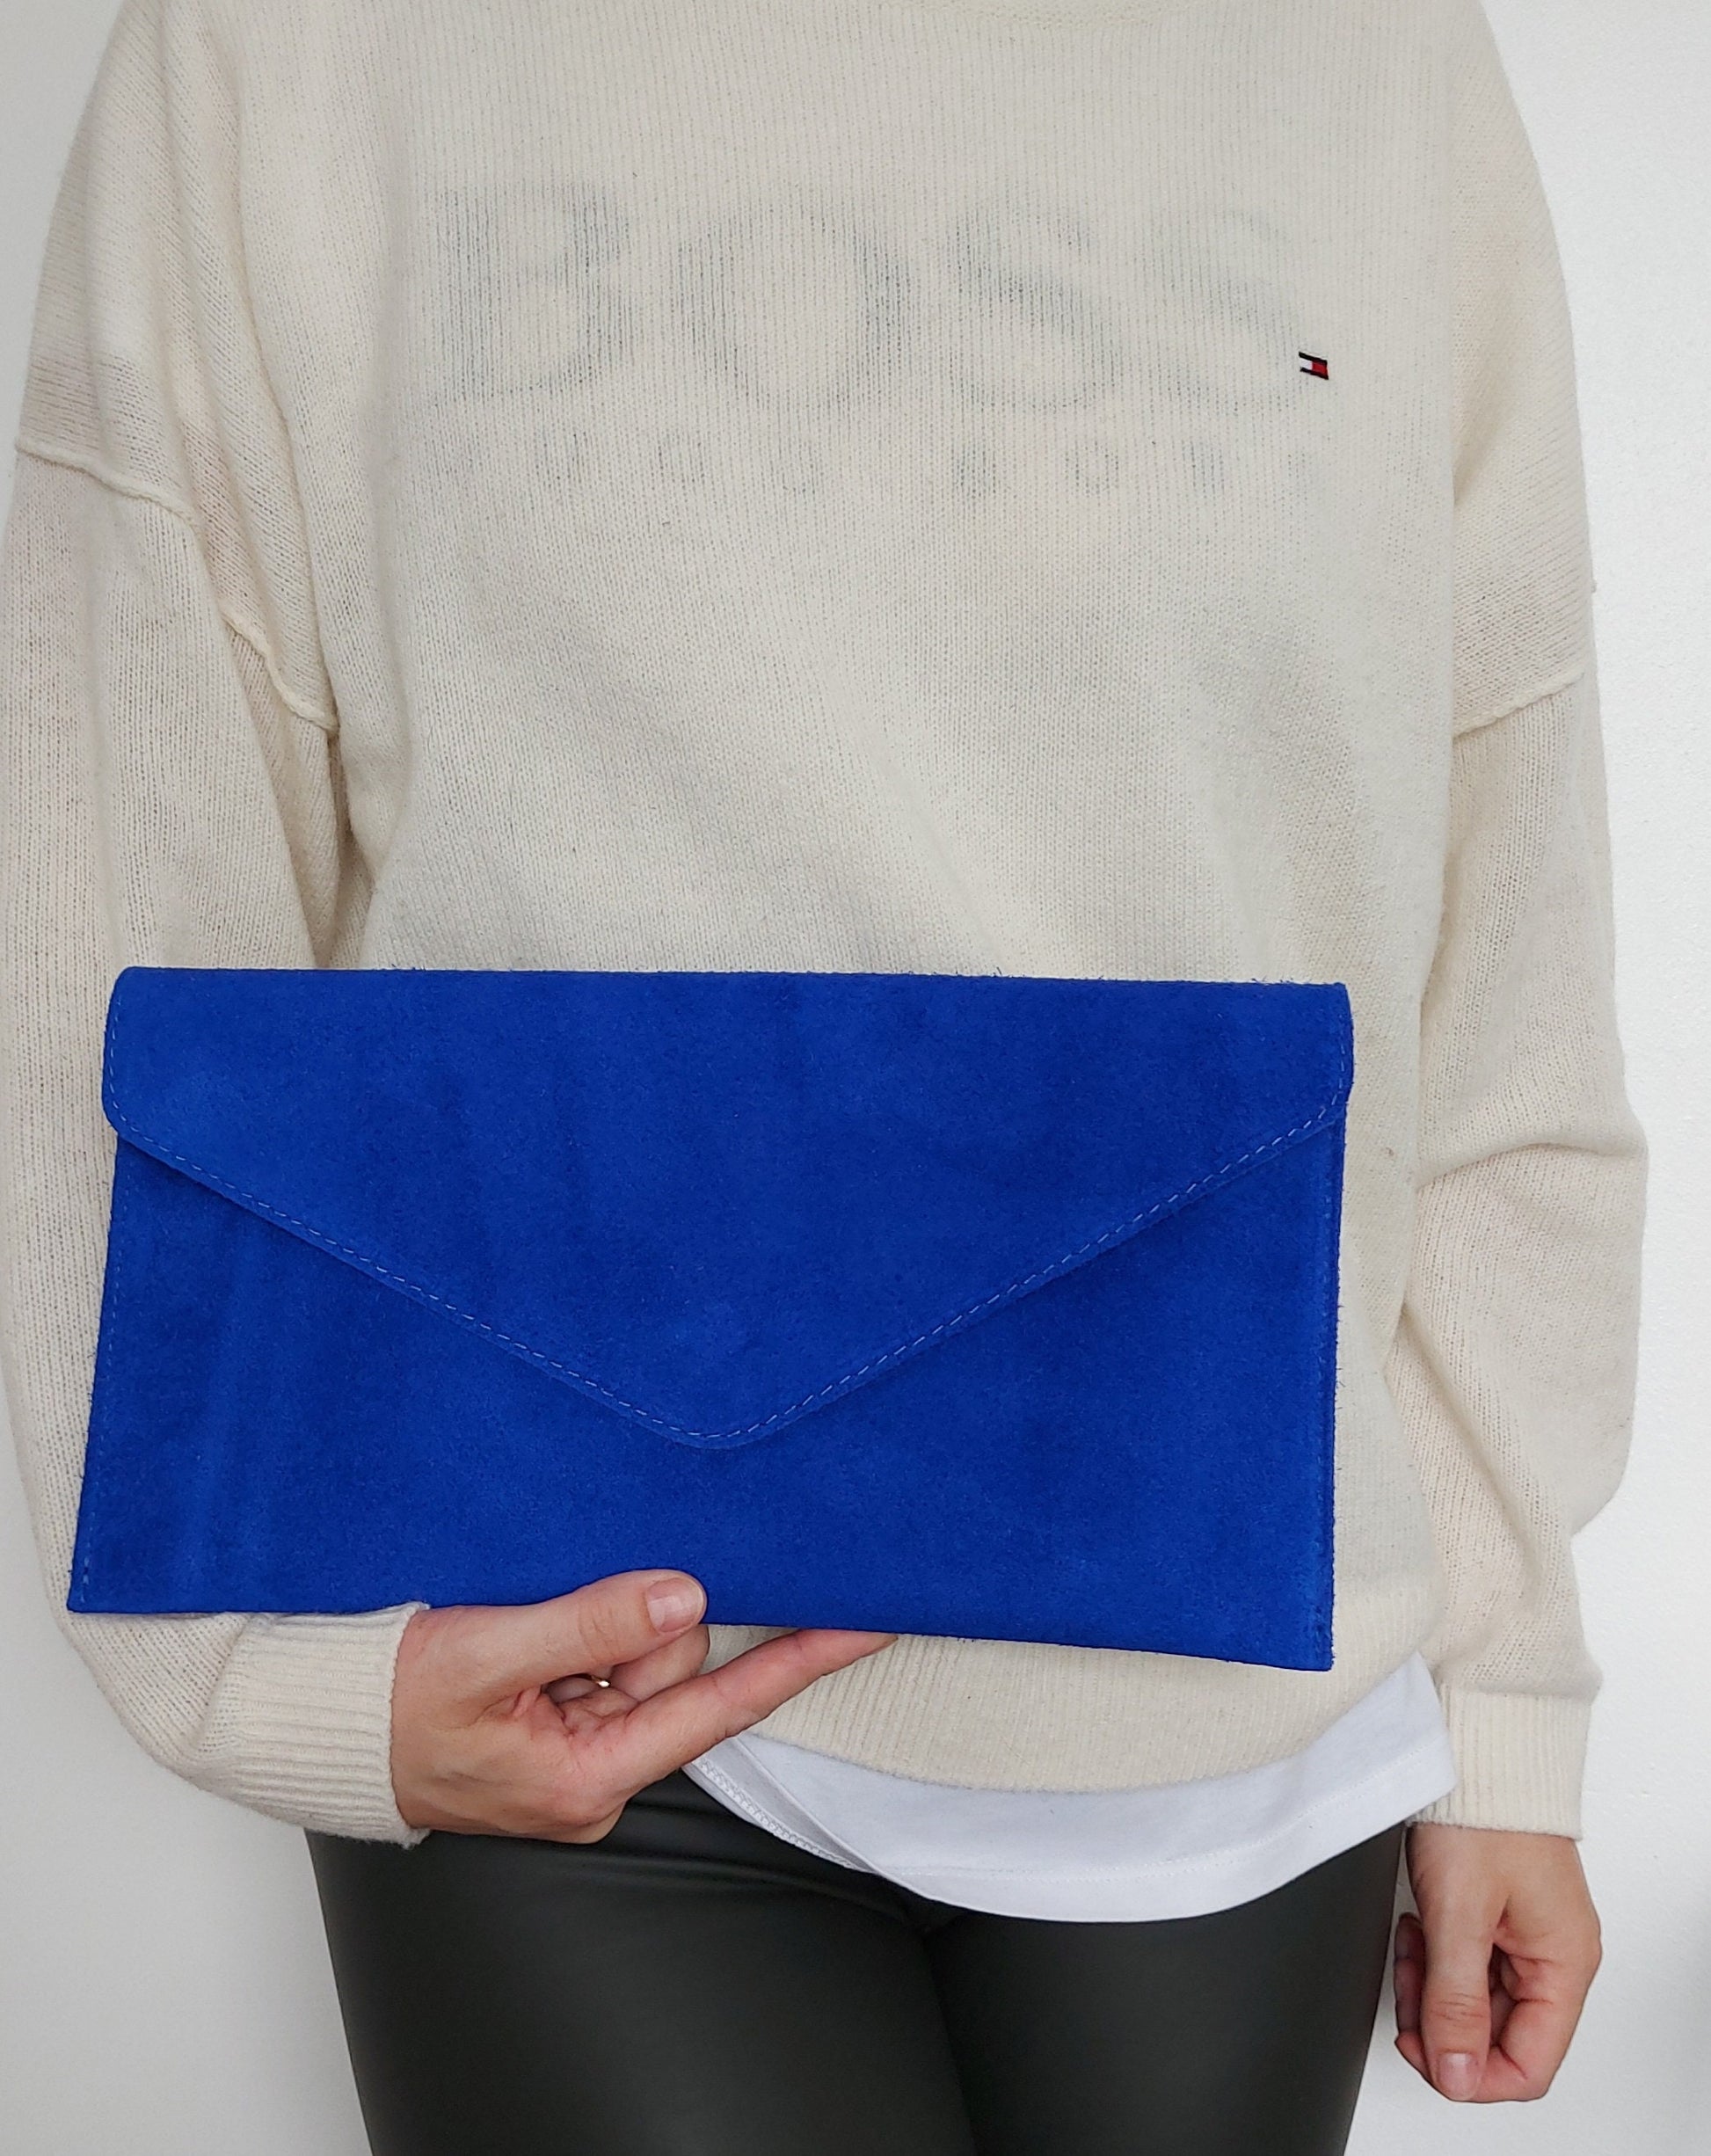 Royal Blue Envelope Clutch Bag